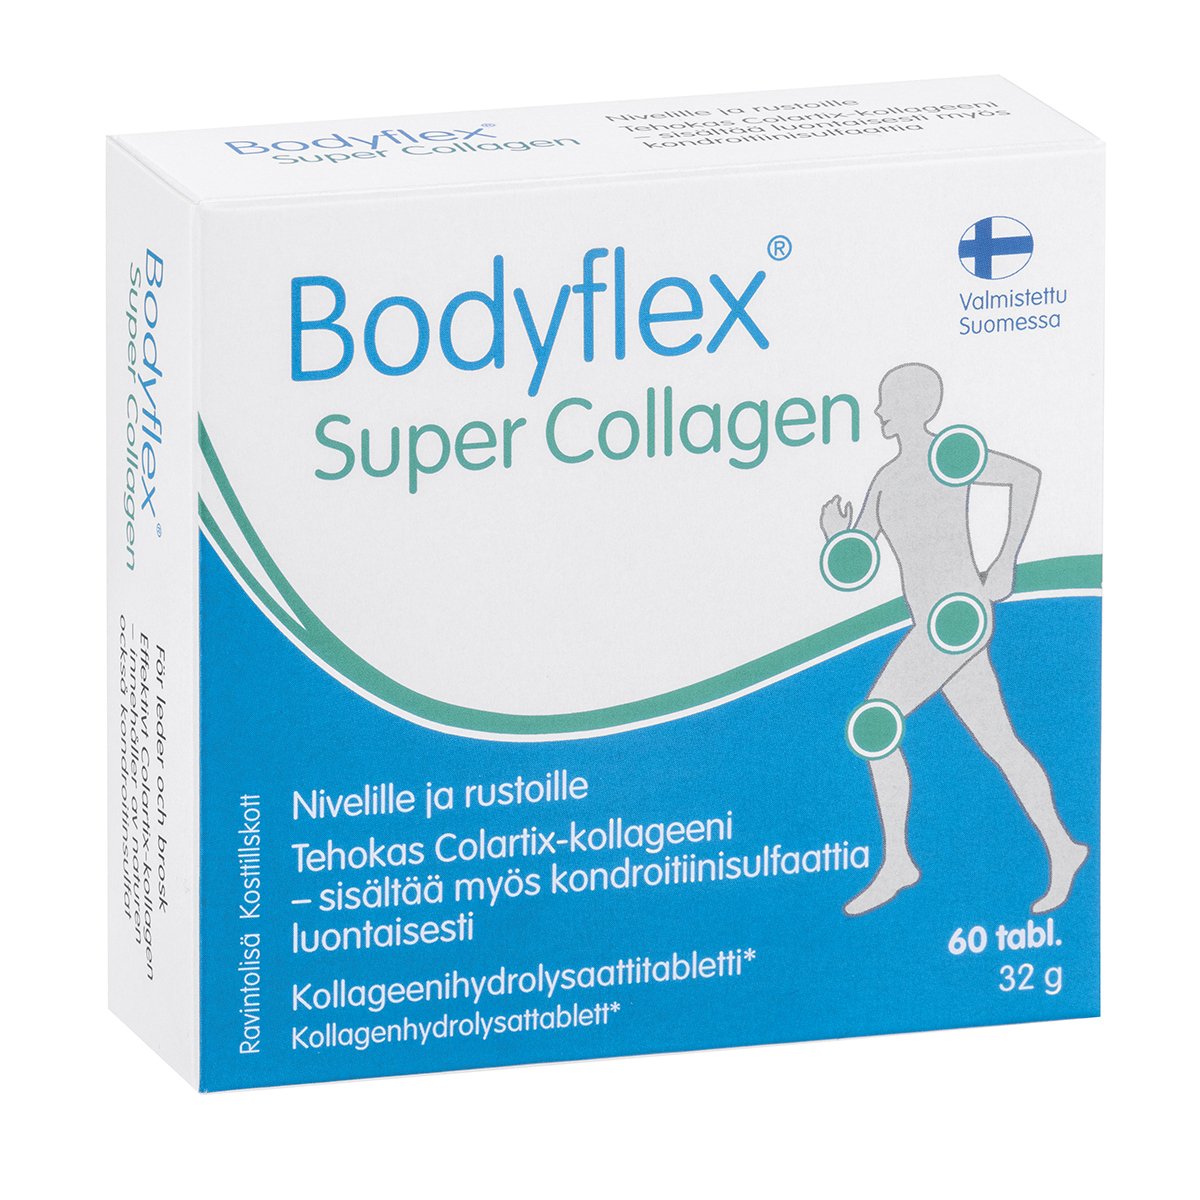 Bodyflex Super Collagen - Hankintatukku